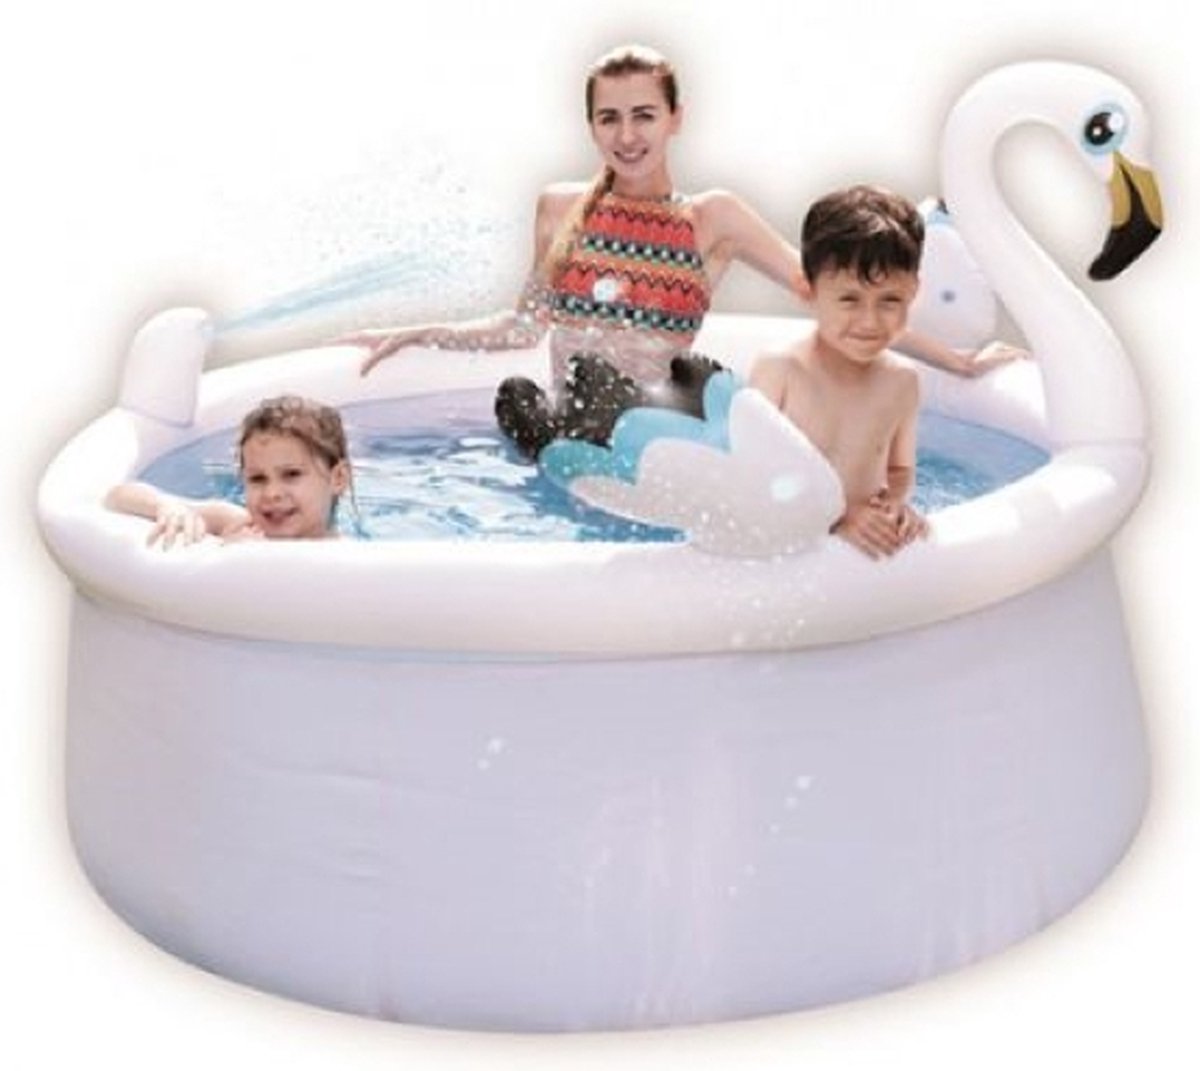 Oneiro's Luxe Zwembad met sproeier - Flamingo - 175cm - zomer - tuin - spelen - speelgoud - buitenspeelgoed - zwembad - zwemmen - zomer - intex - tuinaccessoires - koelen - opblaasbaar